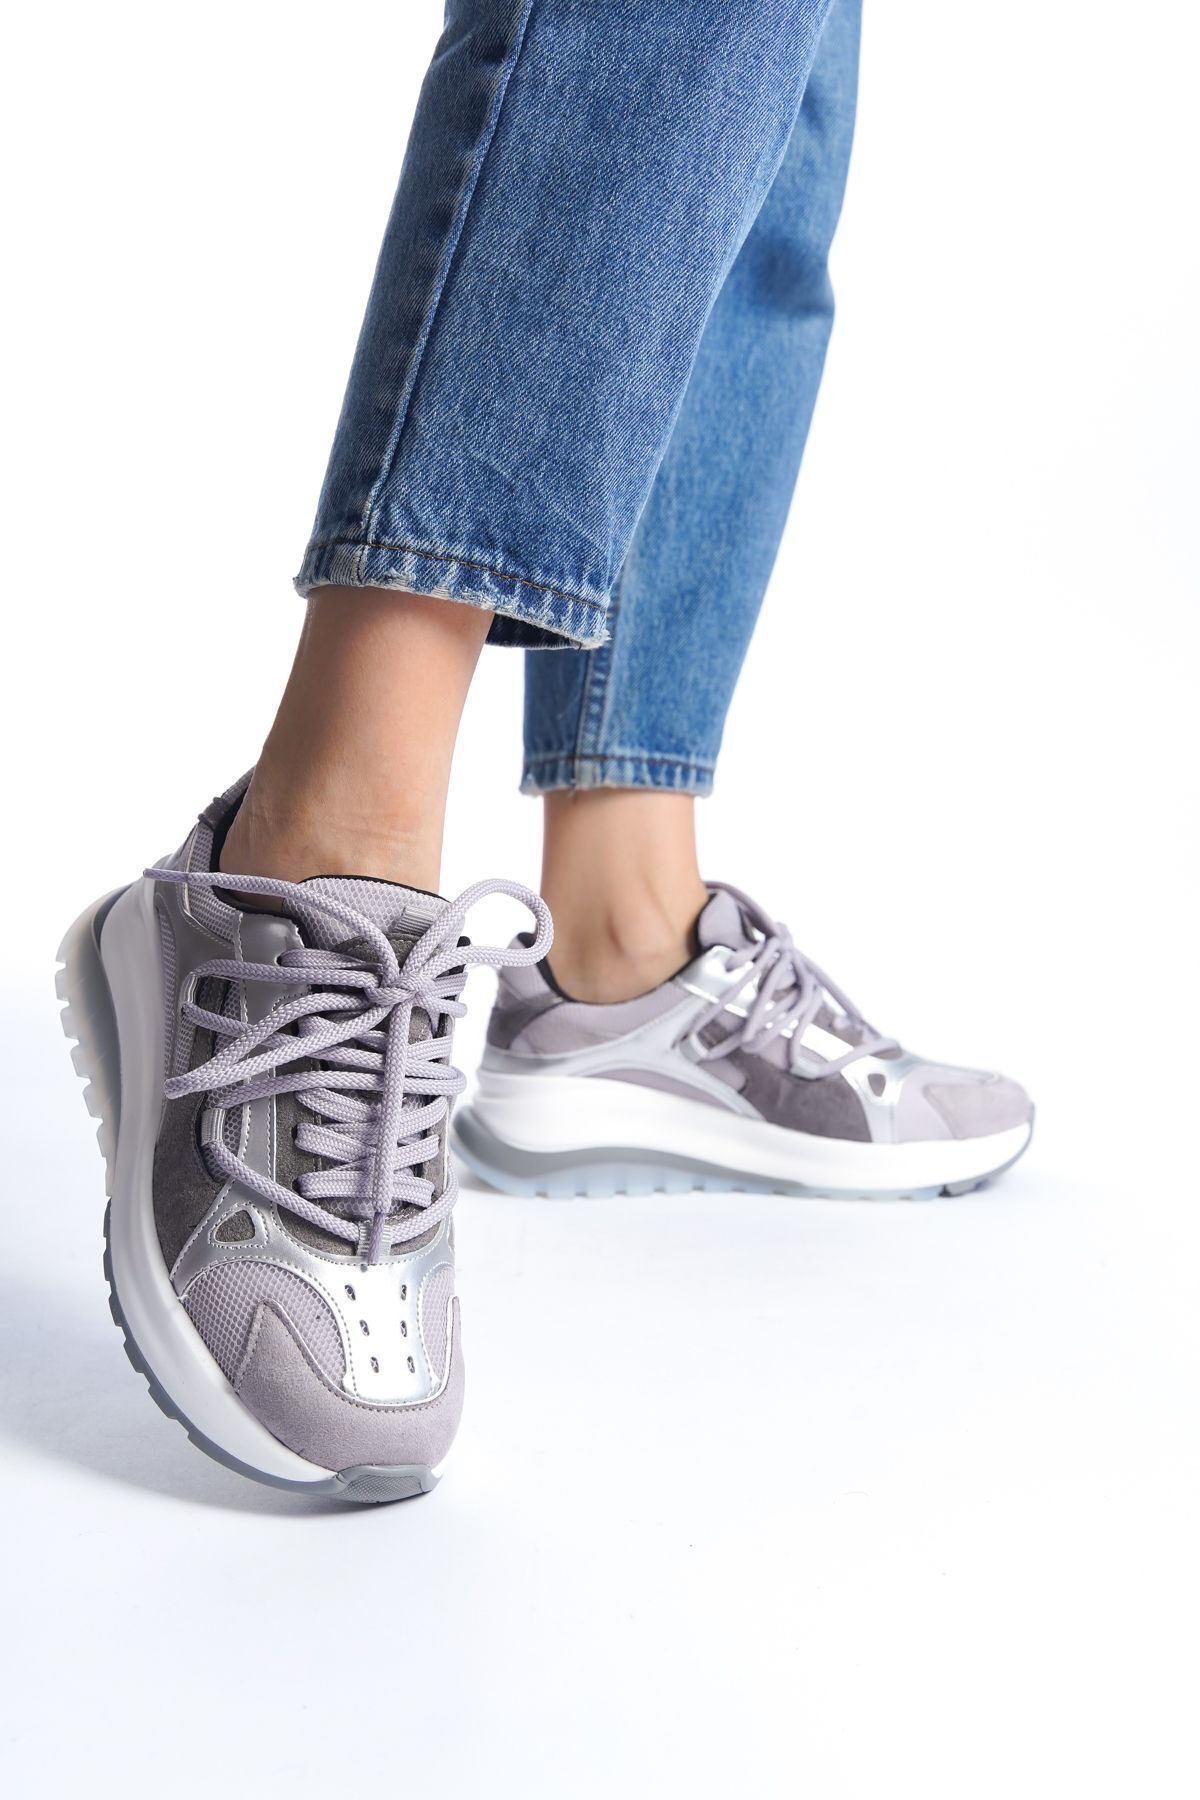 Limeo Gri Fileli Geliştirilmiş Comfort Taban Bağcıklı Günlük Kadın Sneaker Spor Ayakkabı